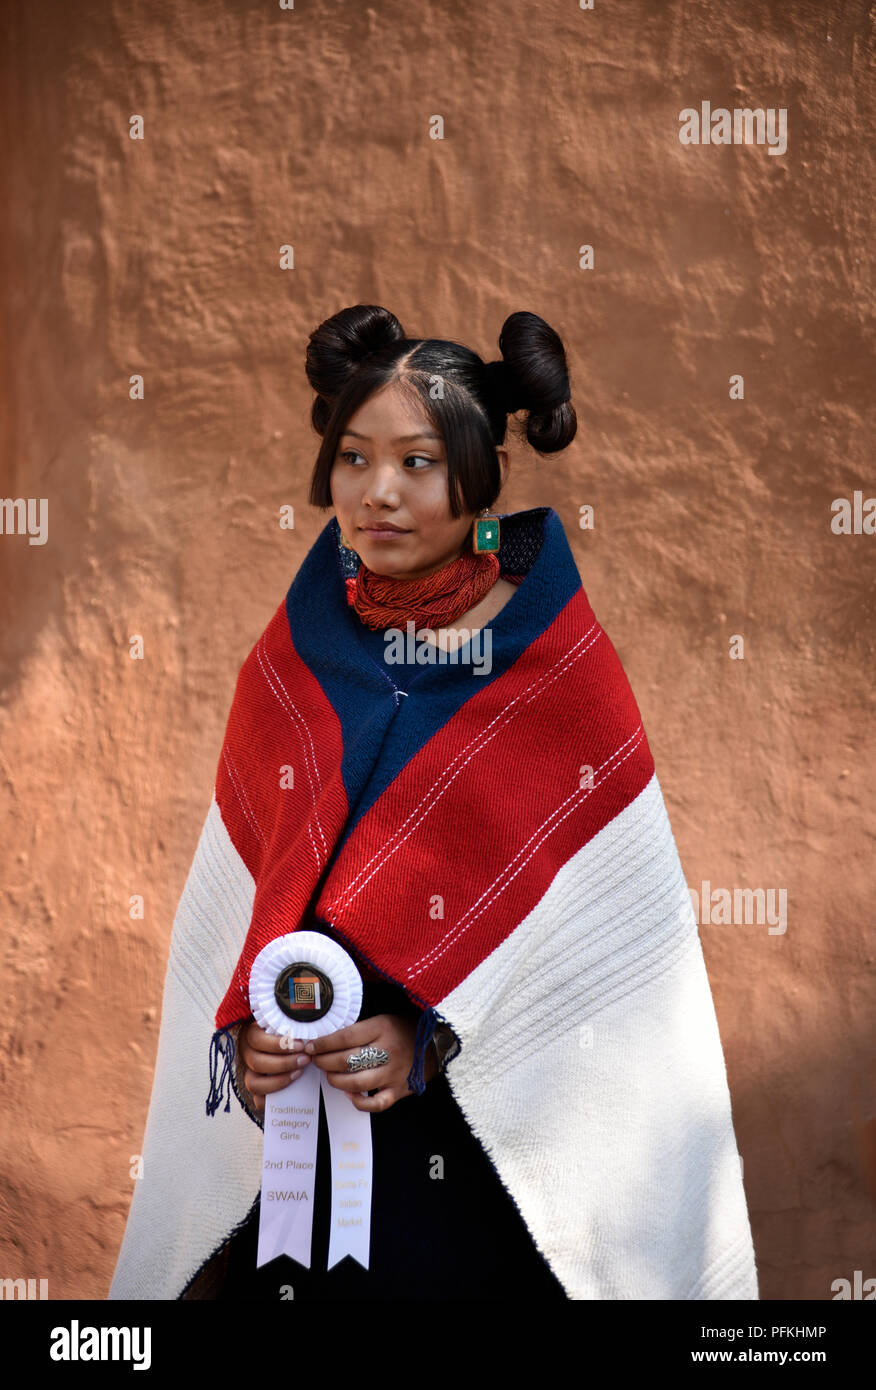 Eine junge Native-American (Hopi) Frau, die traditionelle Hopi Kleidung,  Schmuck und Frisur in der Santa Fe indischen Markt Stockfotografie - Alamy